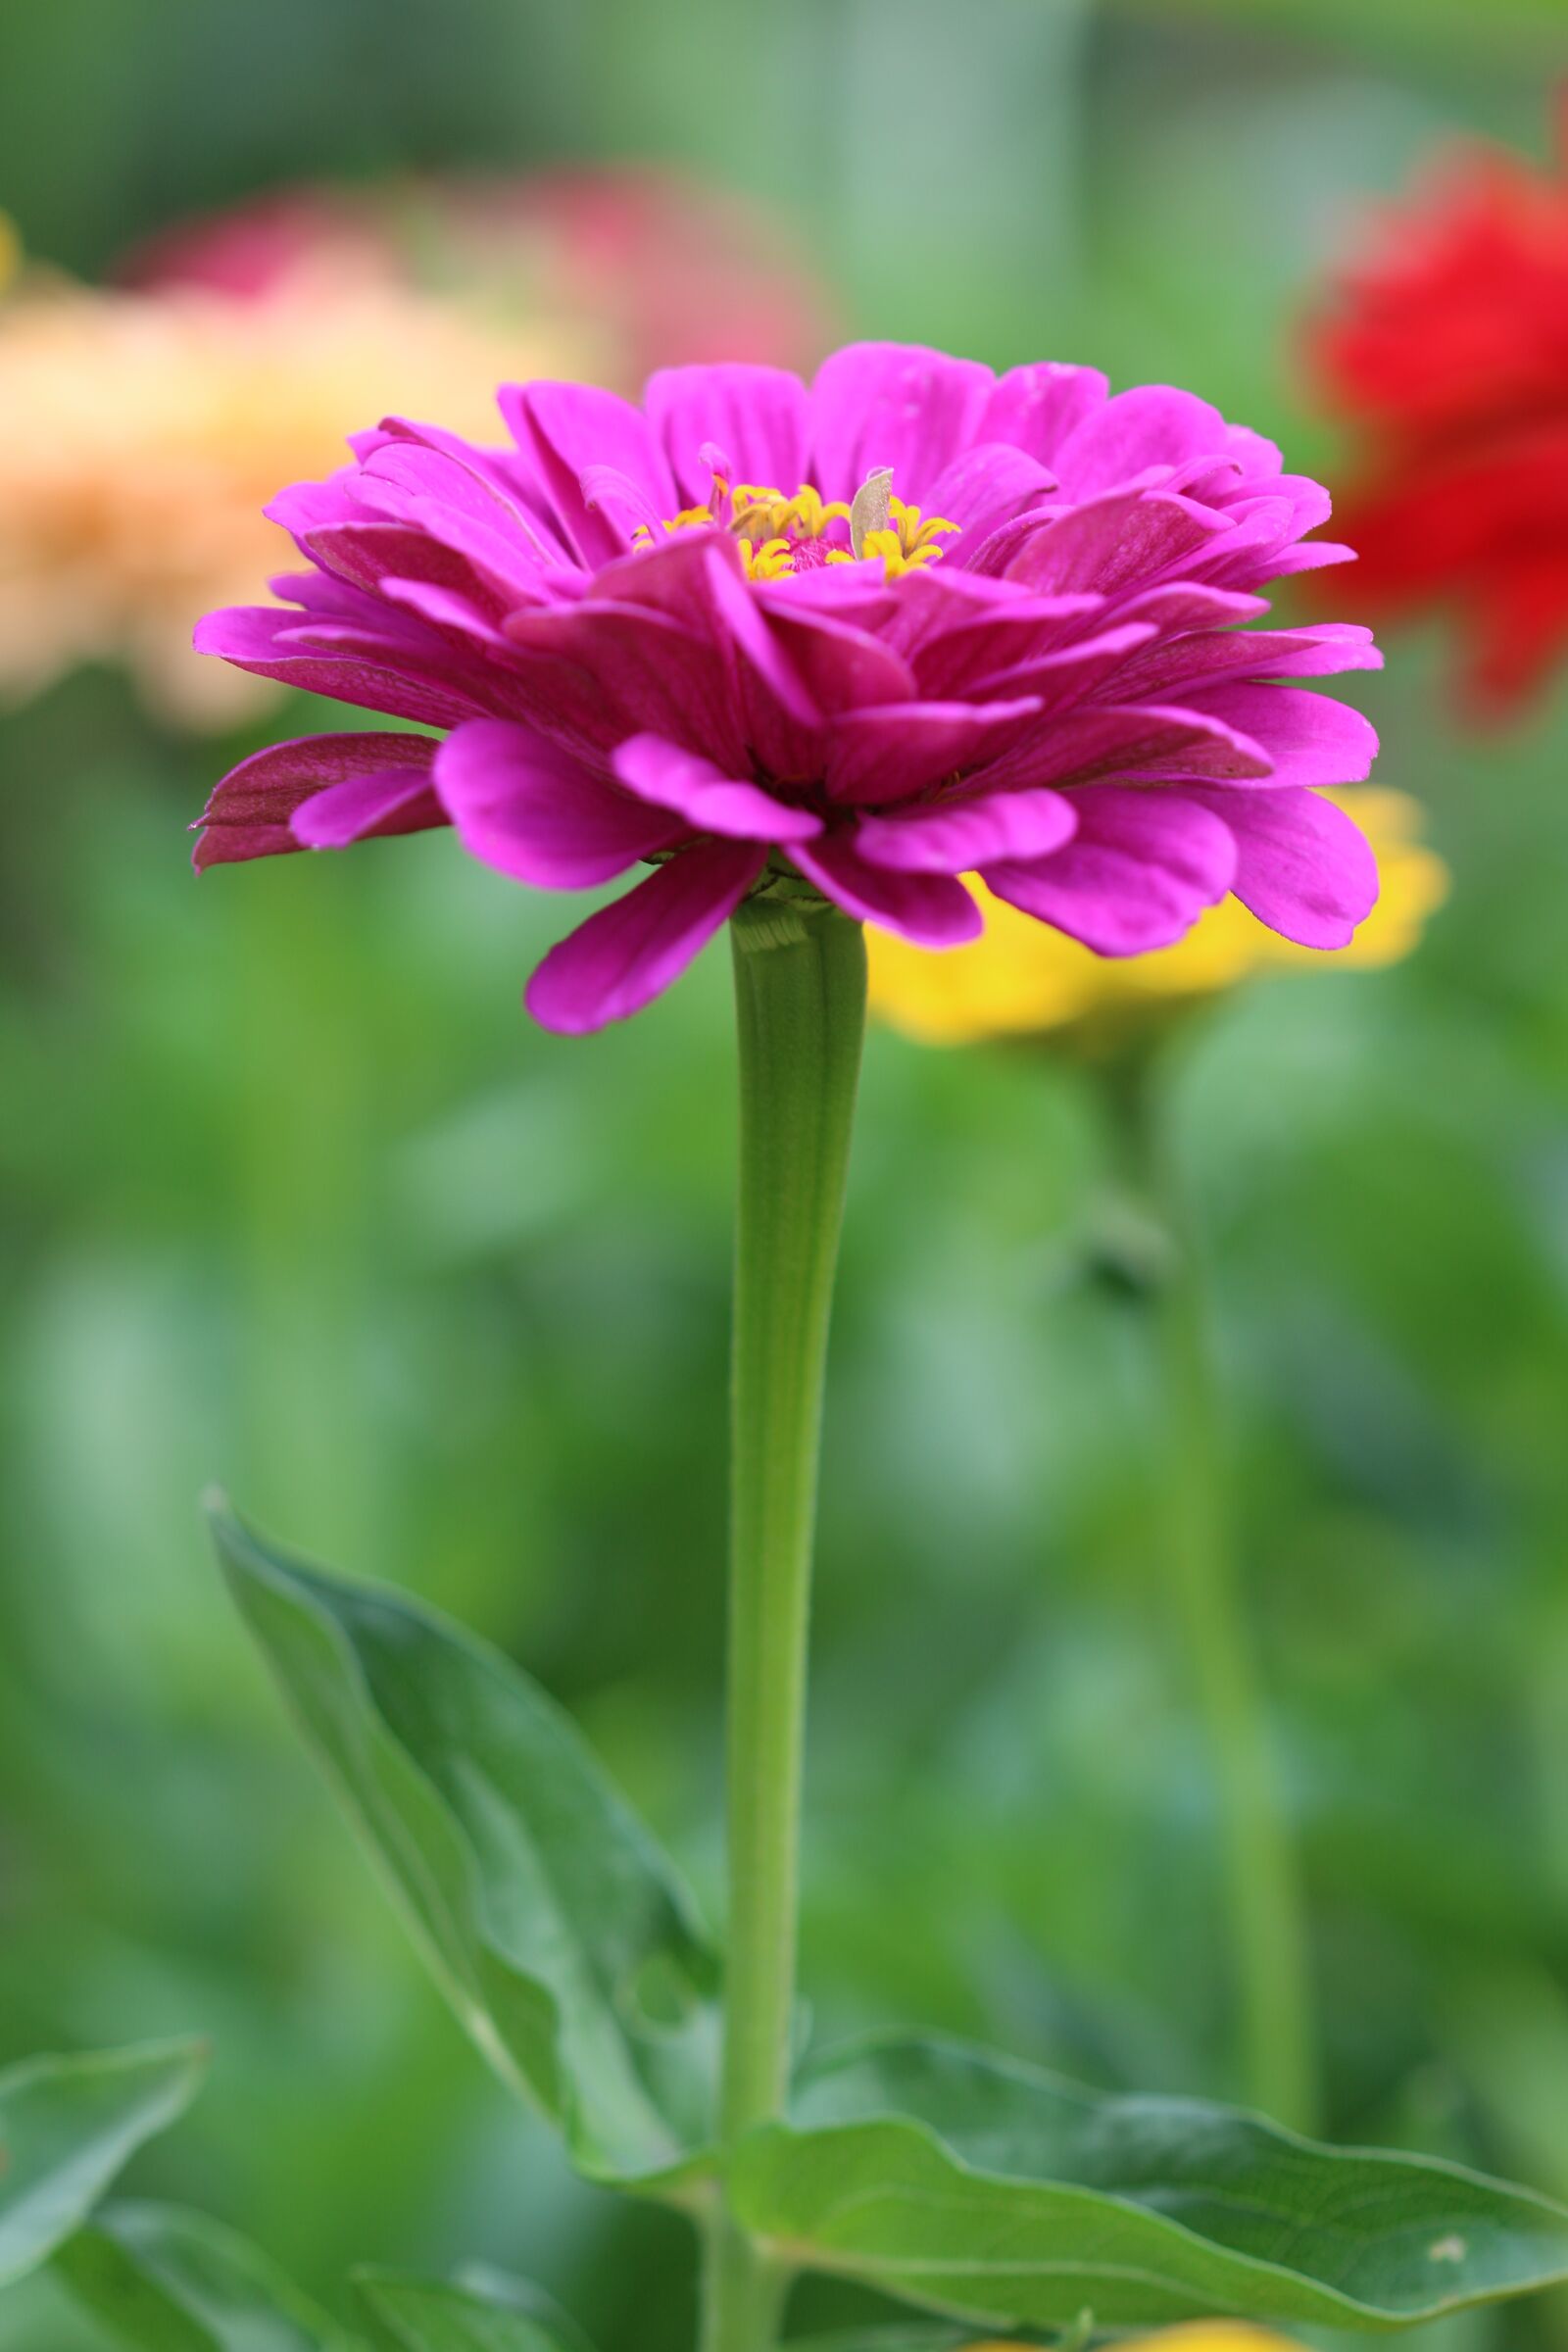 Canon EOS 70D sample photo. Summer flower, nature, garden photography